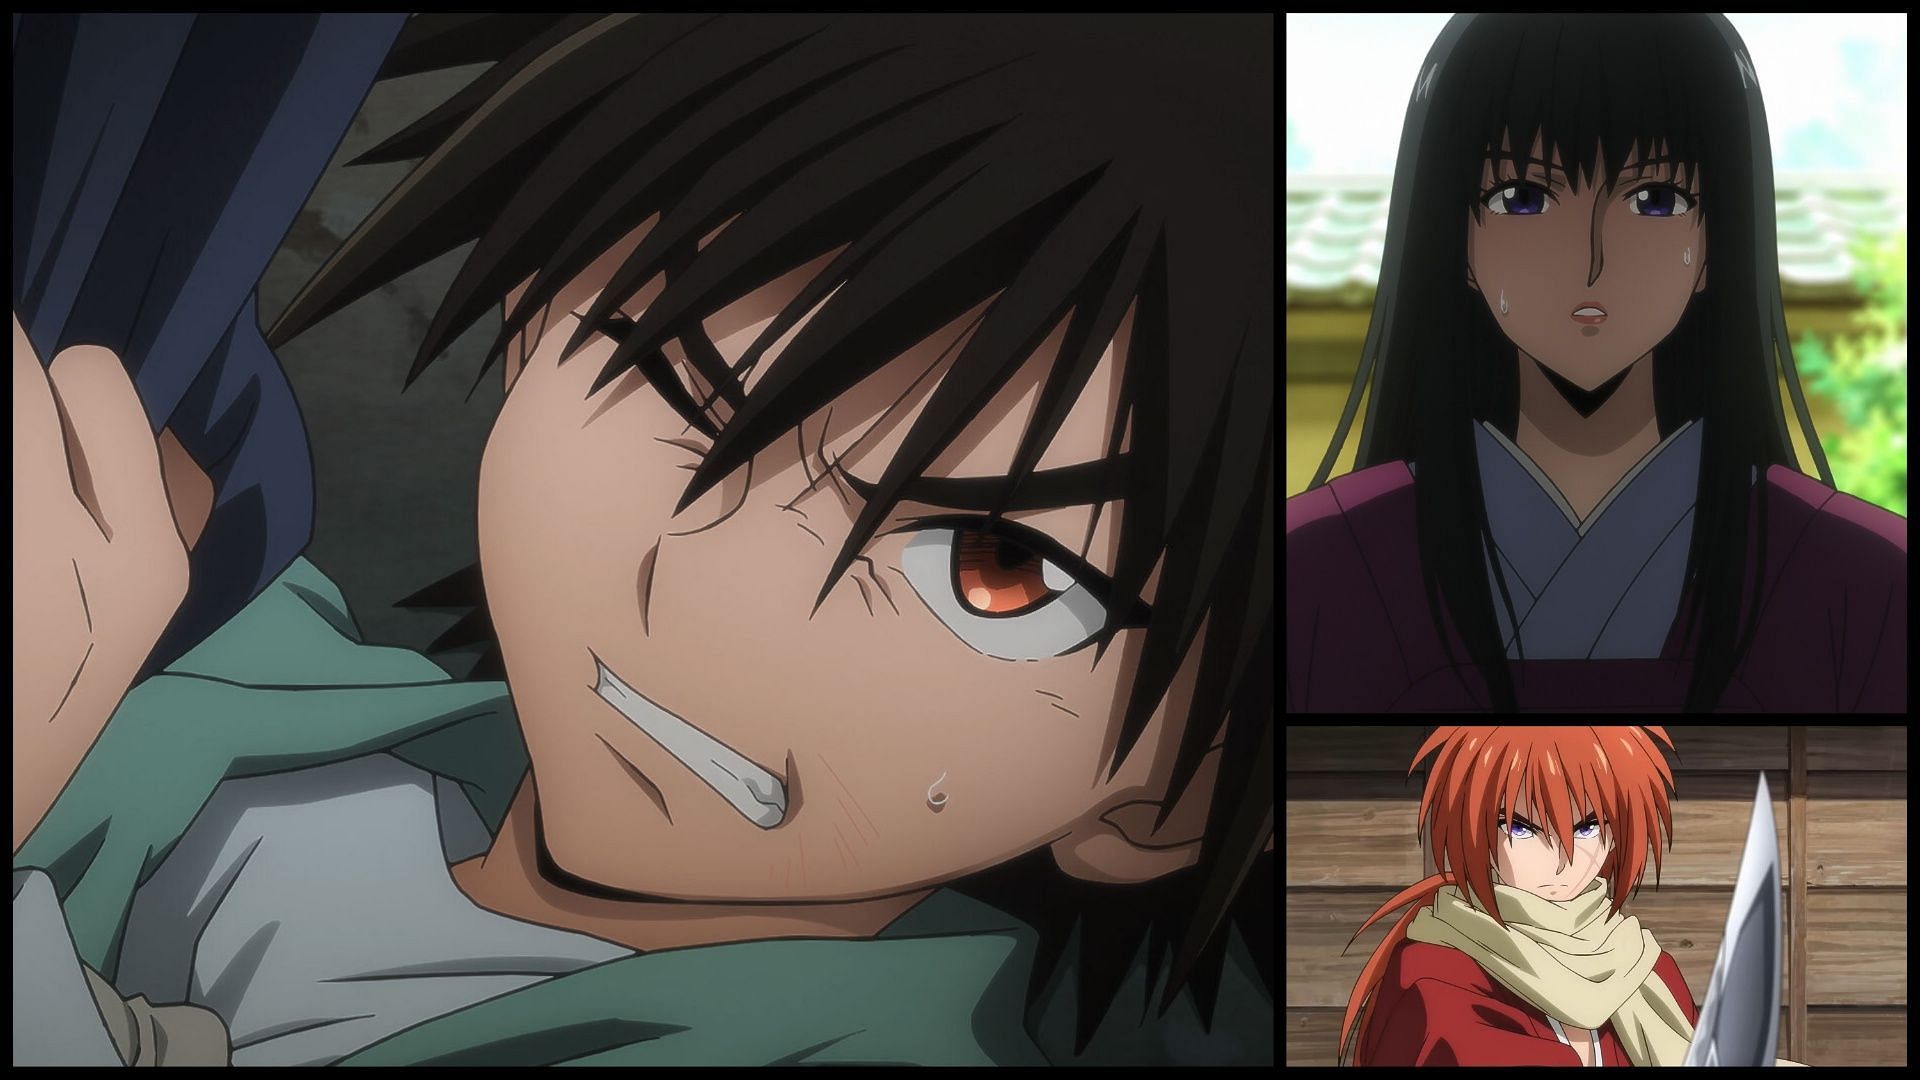 Rurouni Kenshin episode 9 (Image via Sportskeeda)